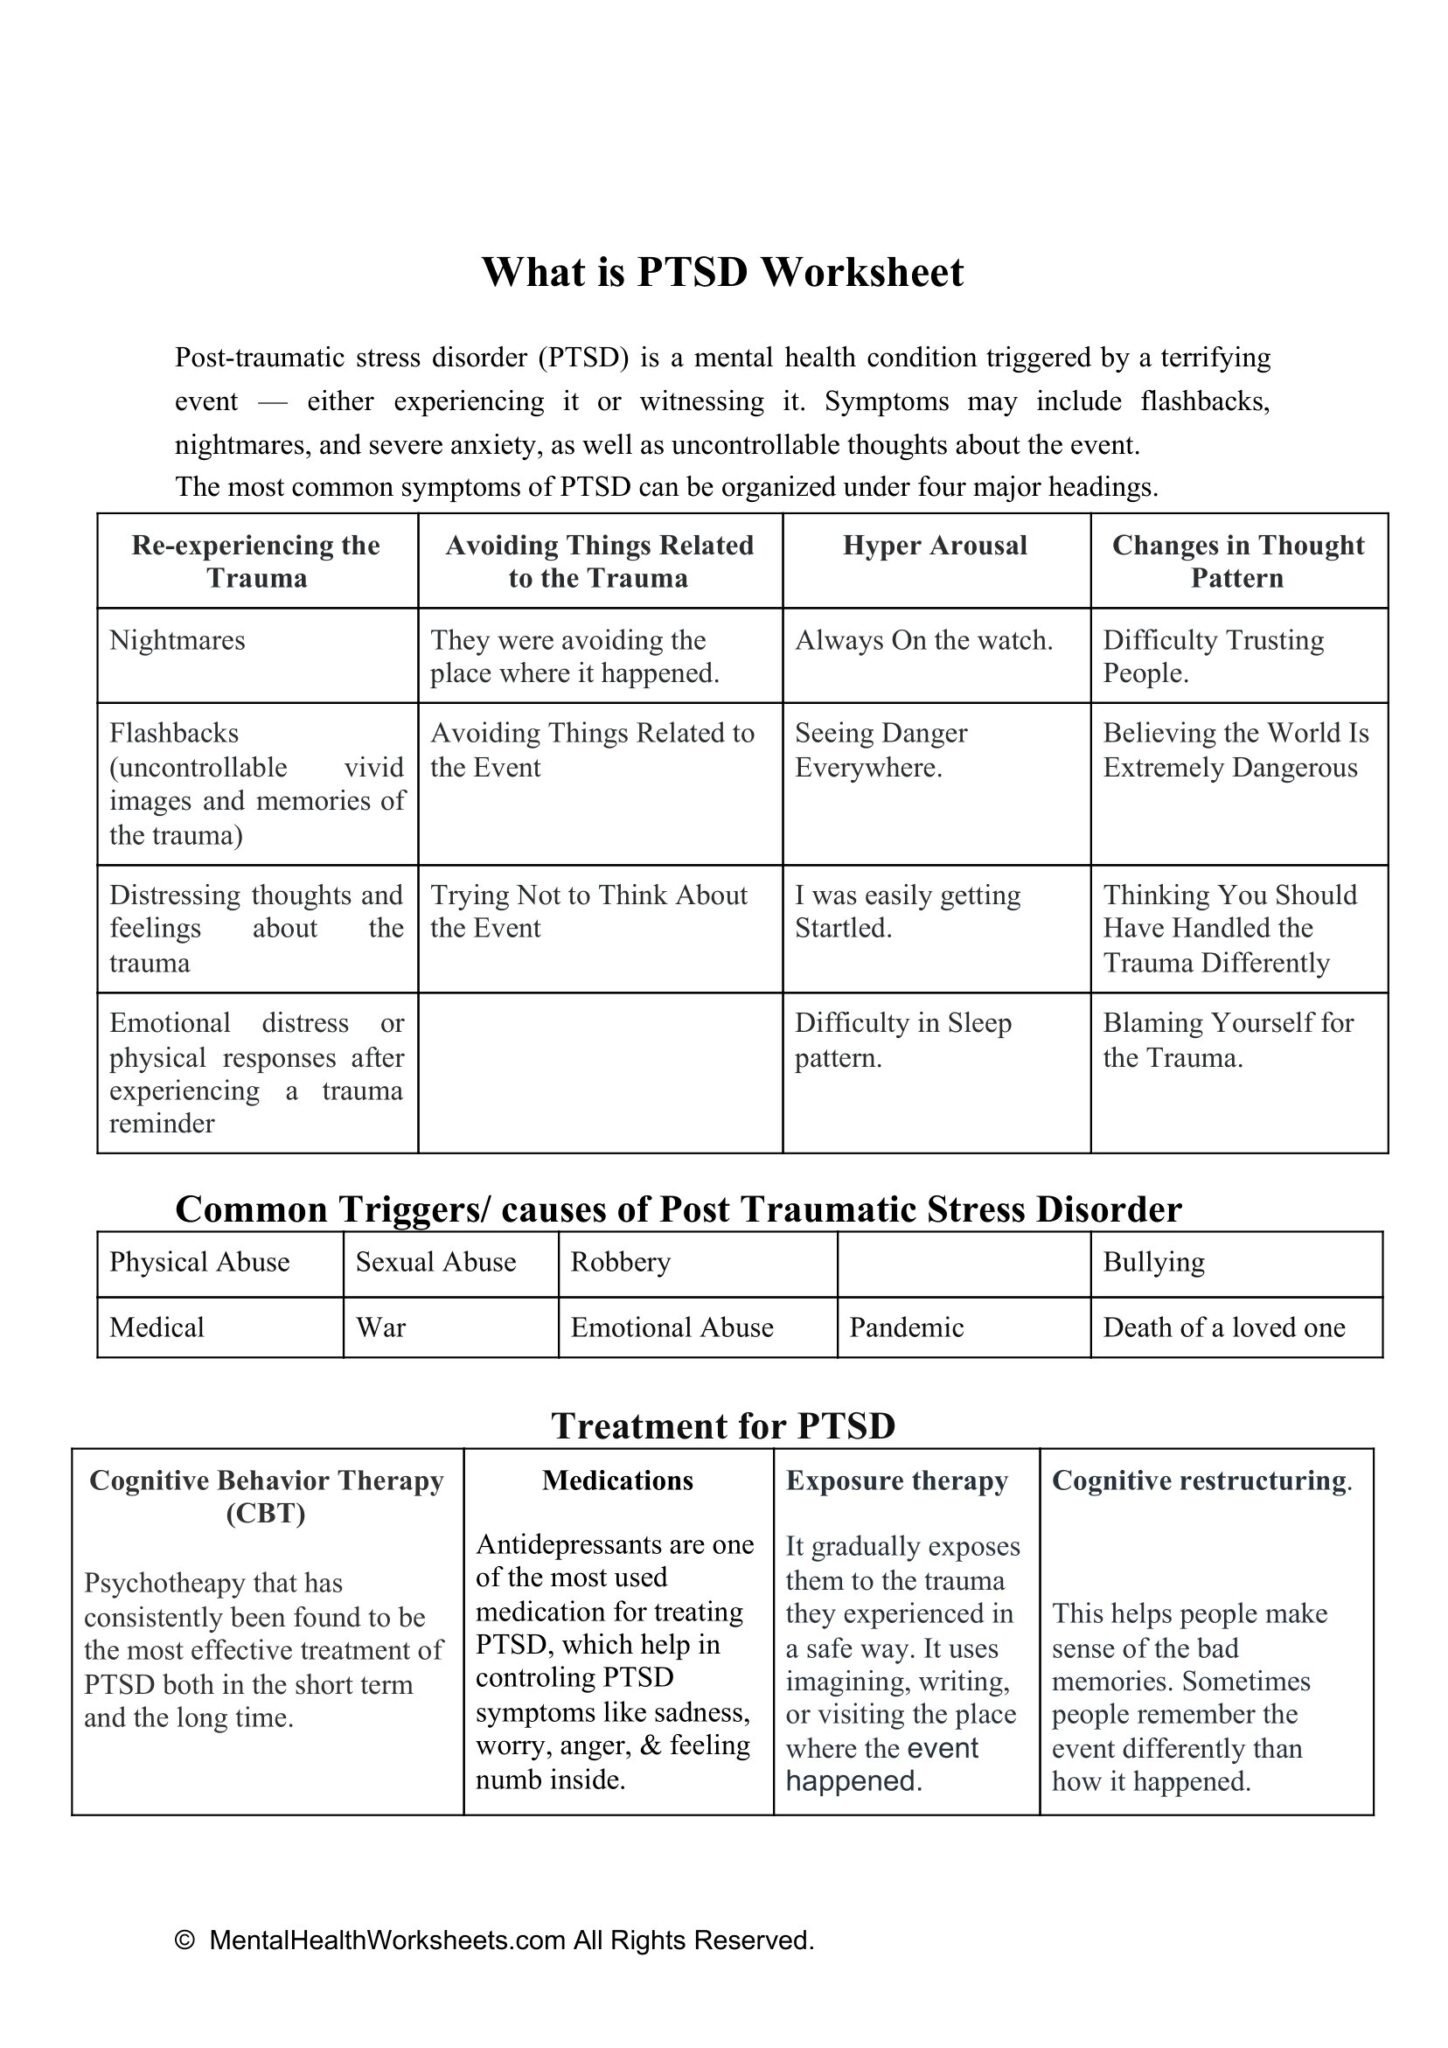 WHAT IS PTSD WORKSHEET Mental Health Worksheets